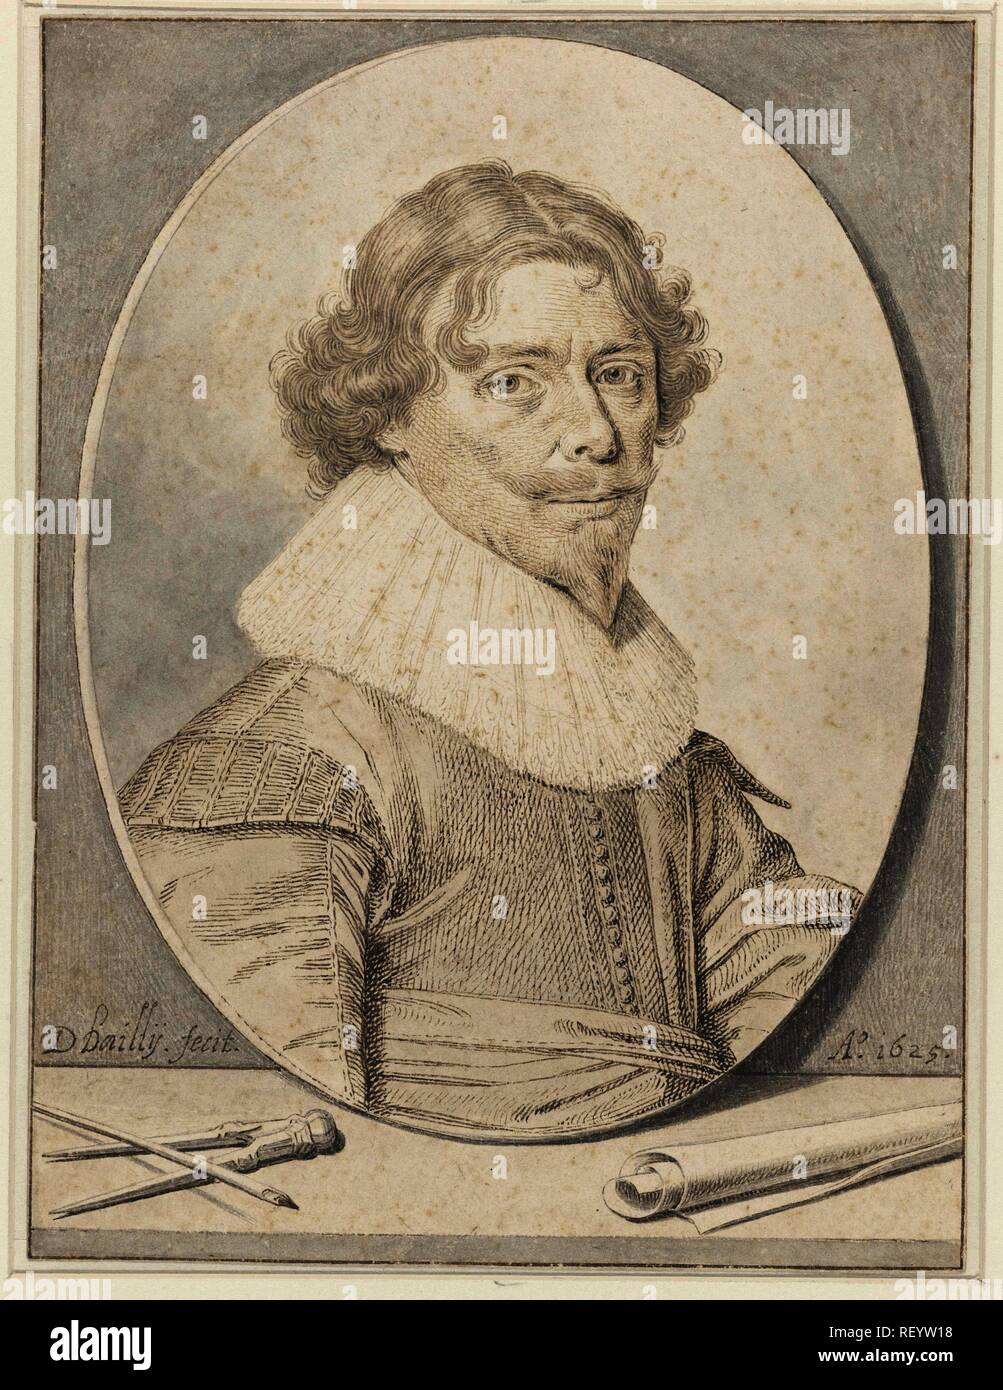 Autoritratto di David Bailly. Relatore: David Bailly. Dating: 1625. Misurazioni: h 182 mm × W 137 mm. Museo: Rijksmuseum Amsterdam. Foto Stock